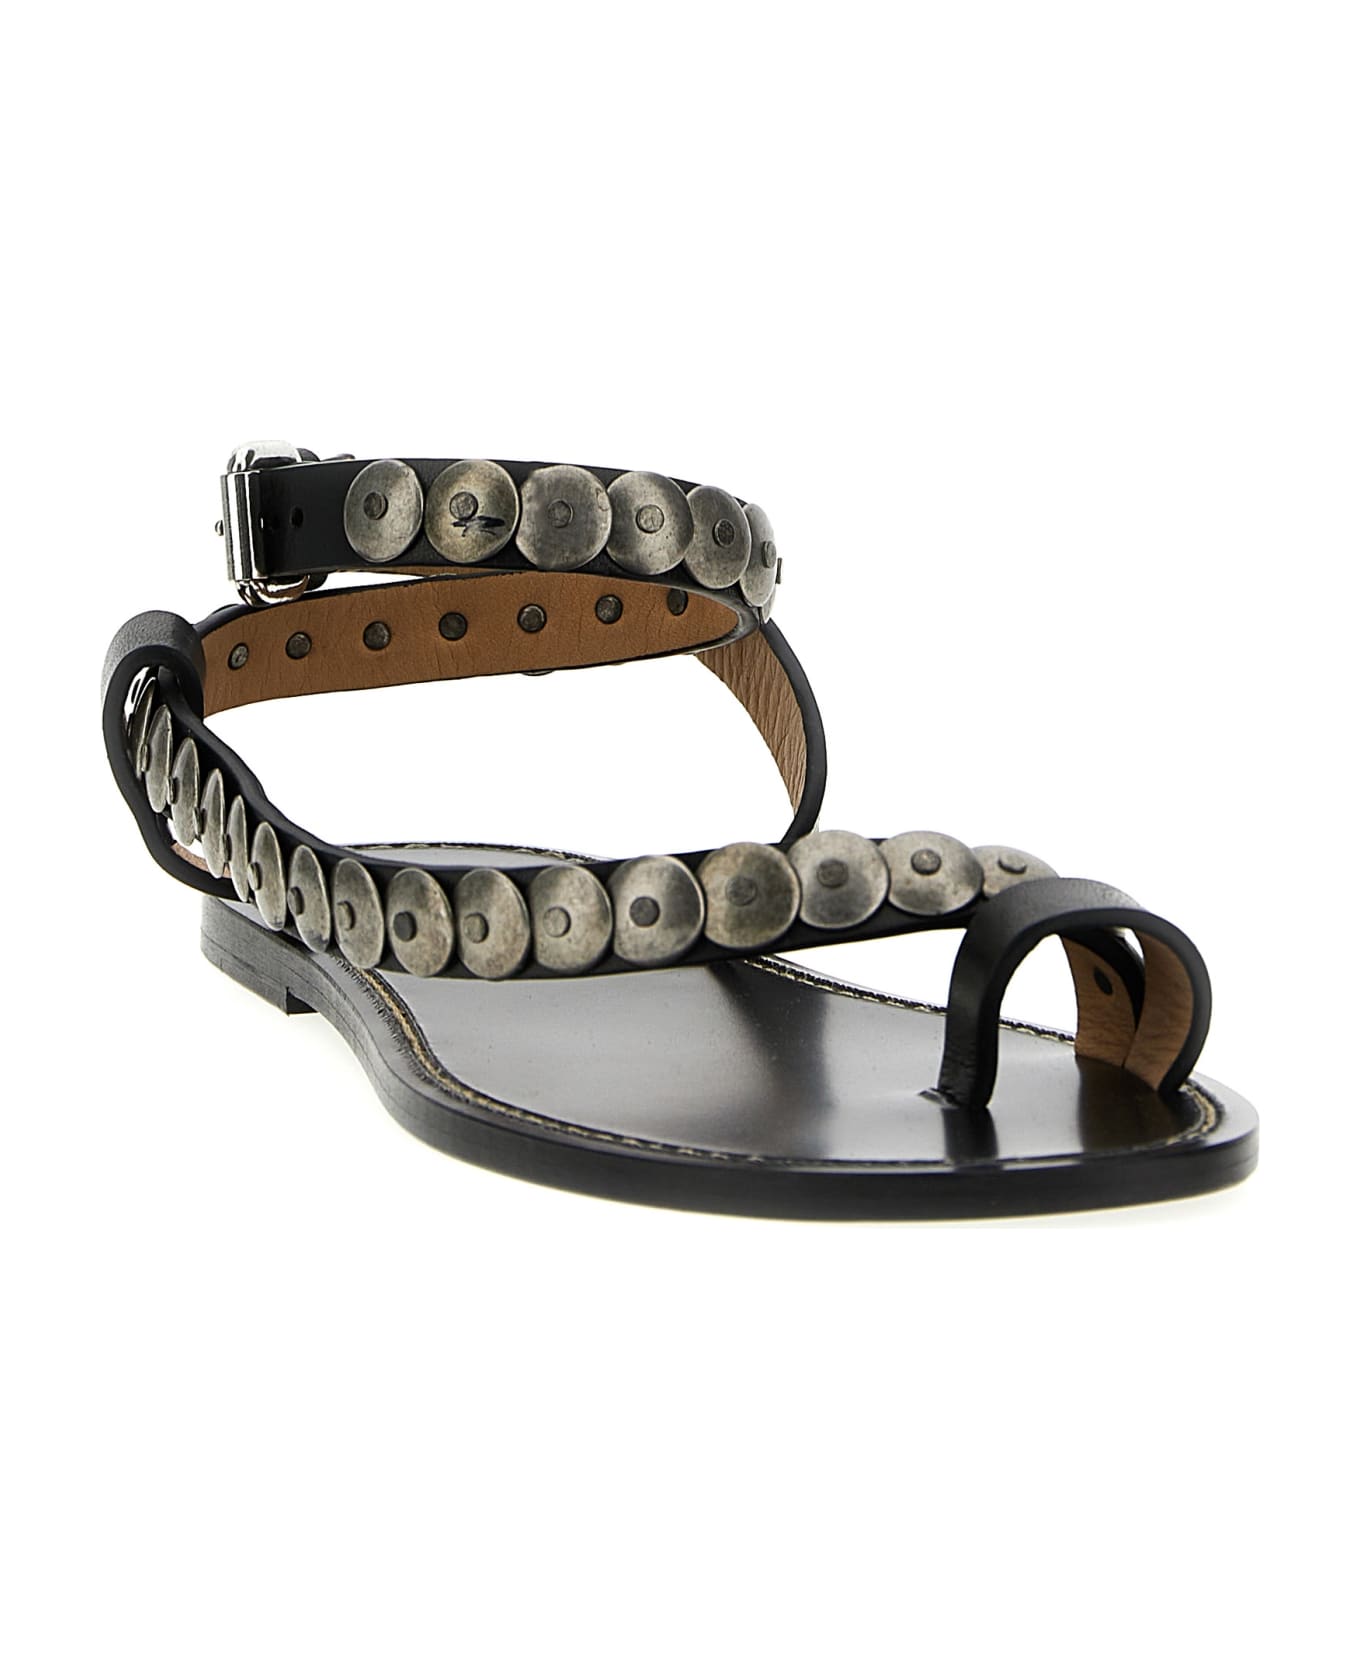 Isabel Marant Melte Leather Sandals - Black サンダル